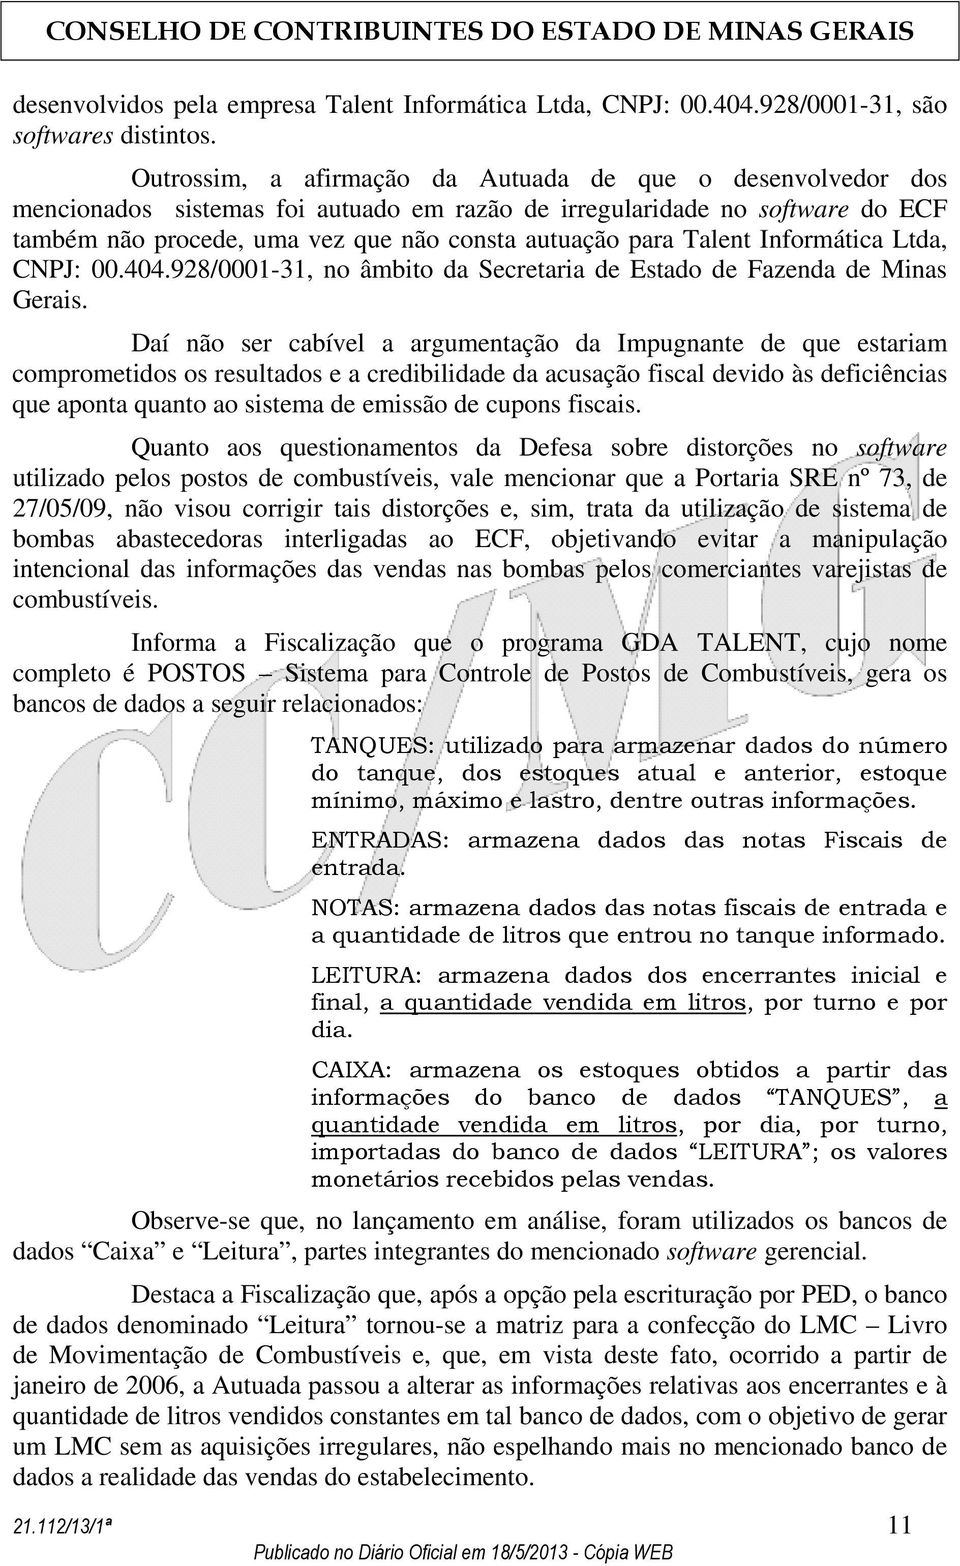 Talent Informática Ltda, CNPJ: 00.404.928/0001-31, no âmbito da Secretaria de Estado de Fazenda de Minas Gerais.